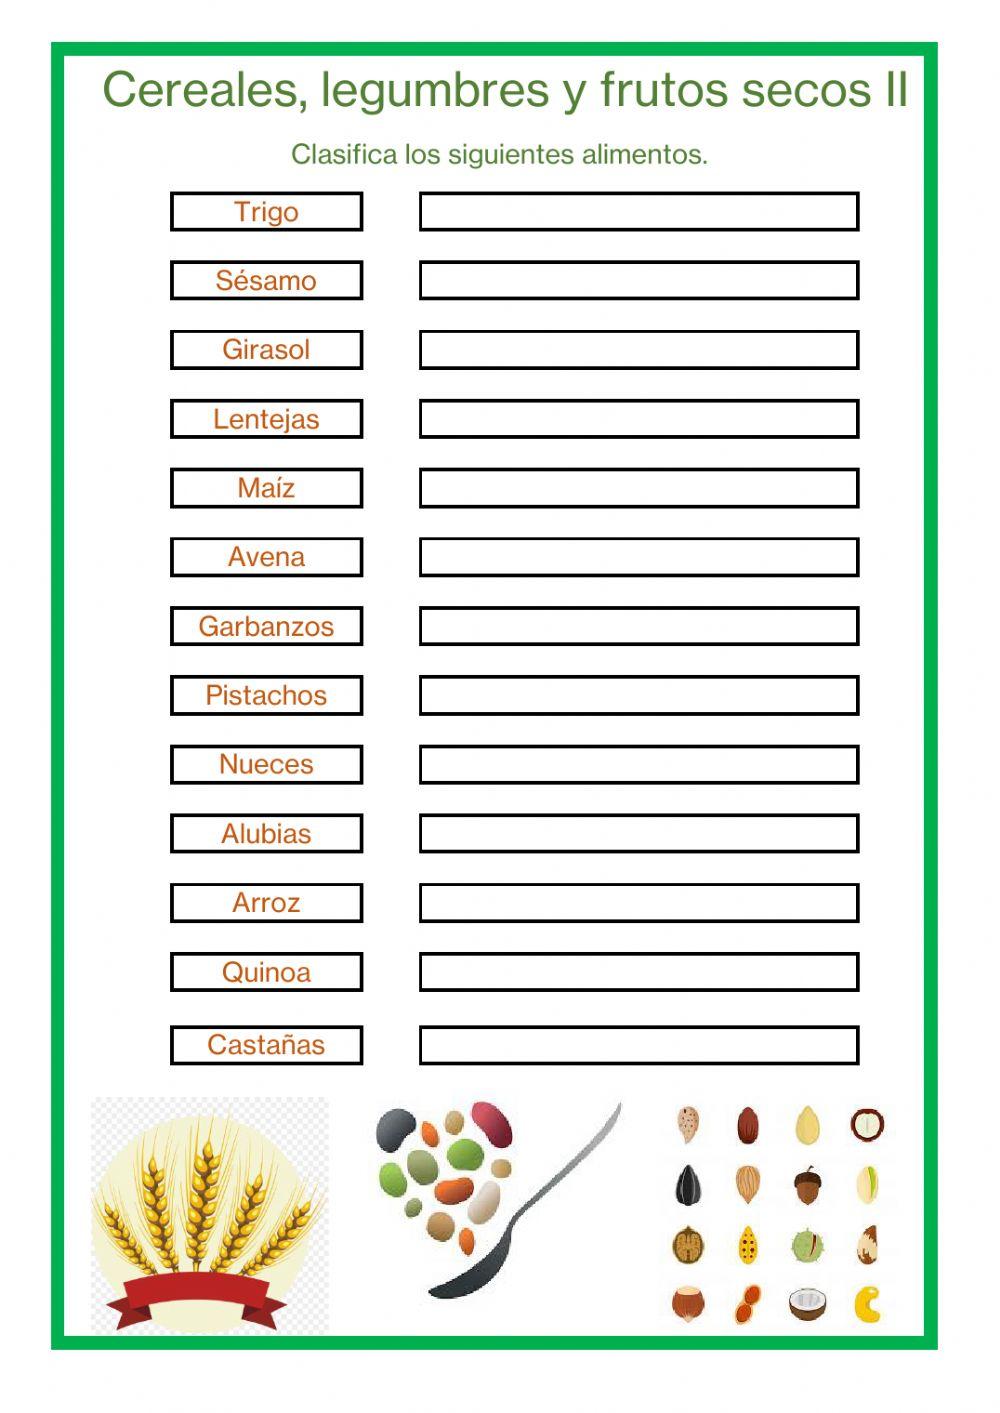 Cereales, legumbres y frutos secos II